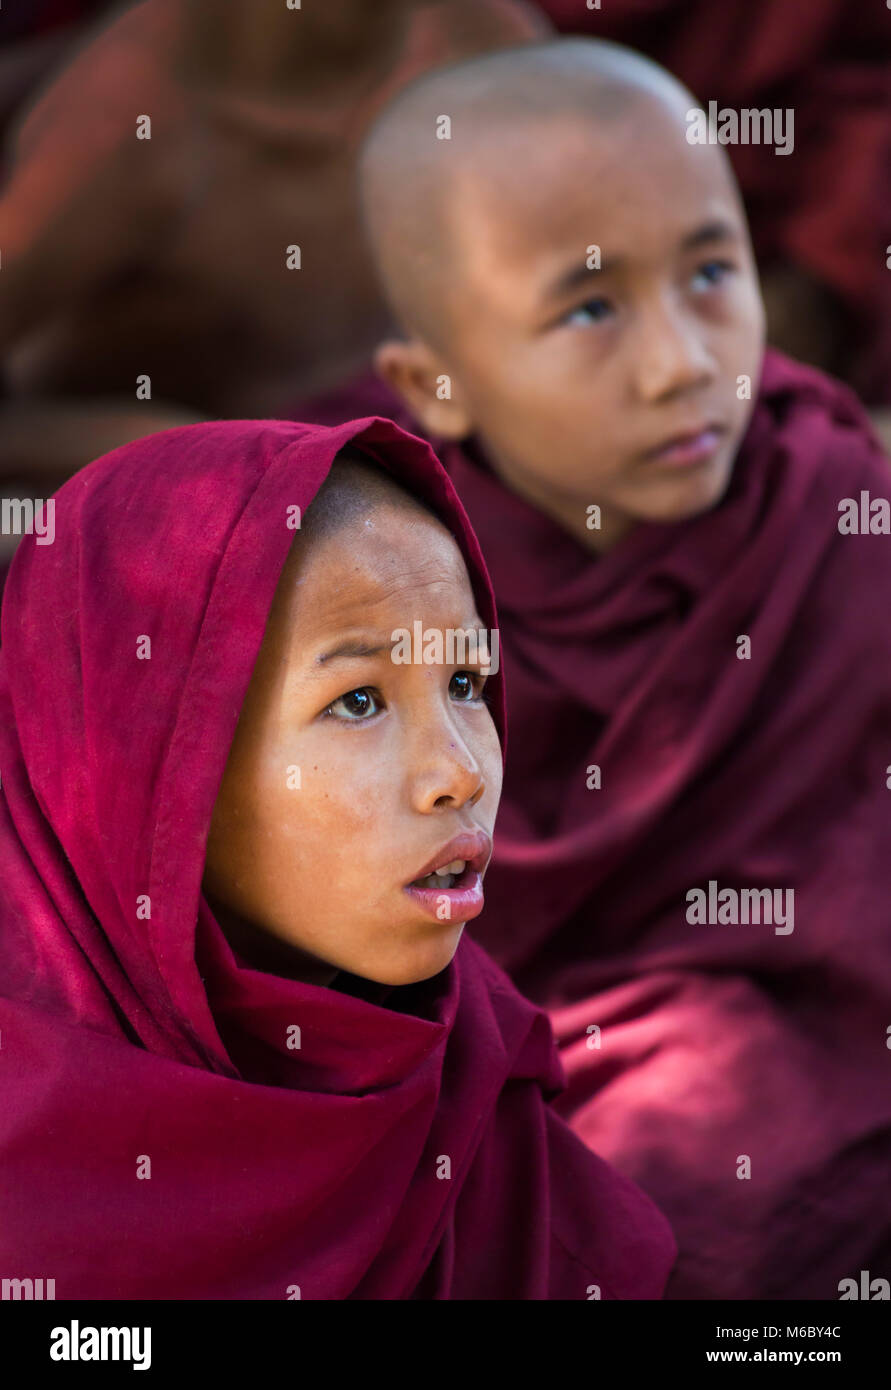 De jeunes moines bouddhistes débutants sont confrontés devant la télévision à l'école monastique d'éducation libre Aung Myae Oo, Sagaing, Mandalay, Myanmar (Birmanie), Asie en février Banque D'Images